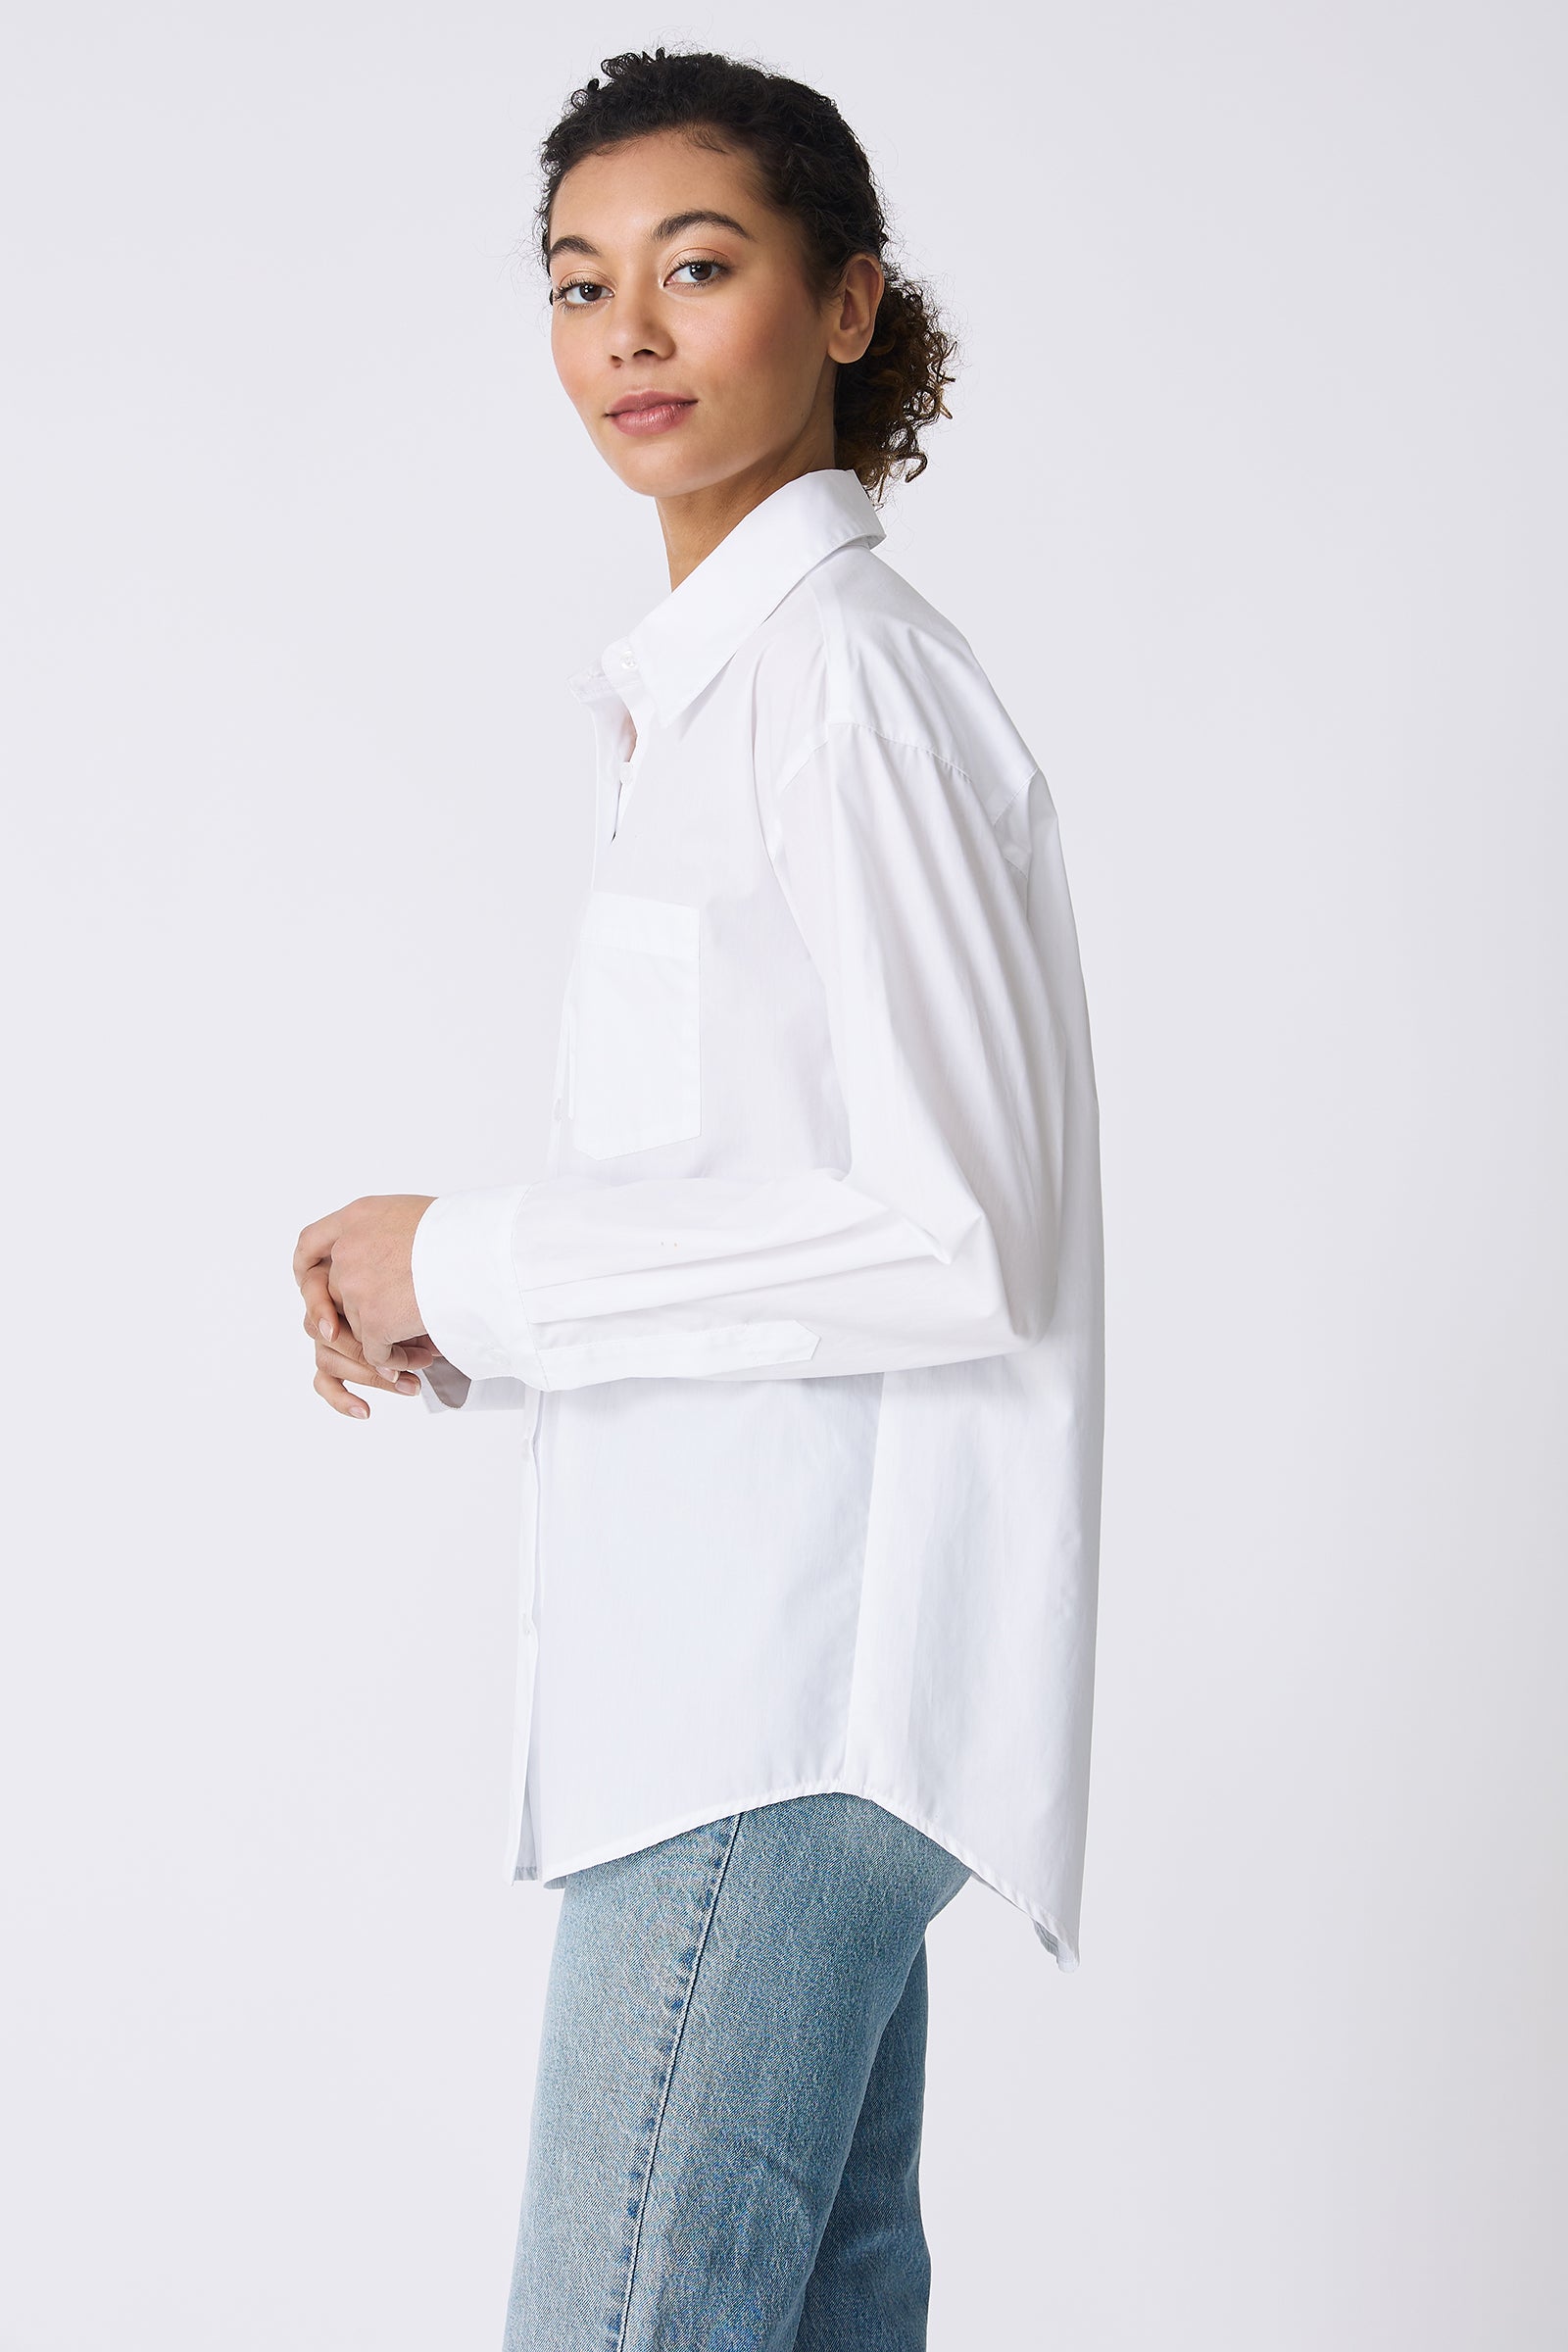 Kal Rieman Joni Boyfriend Shirt in White Poplin on model side view